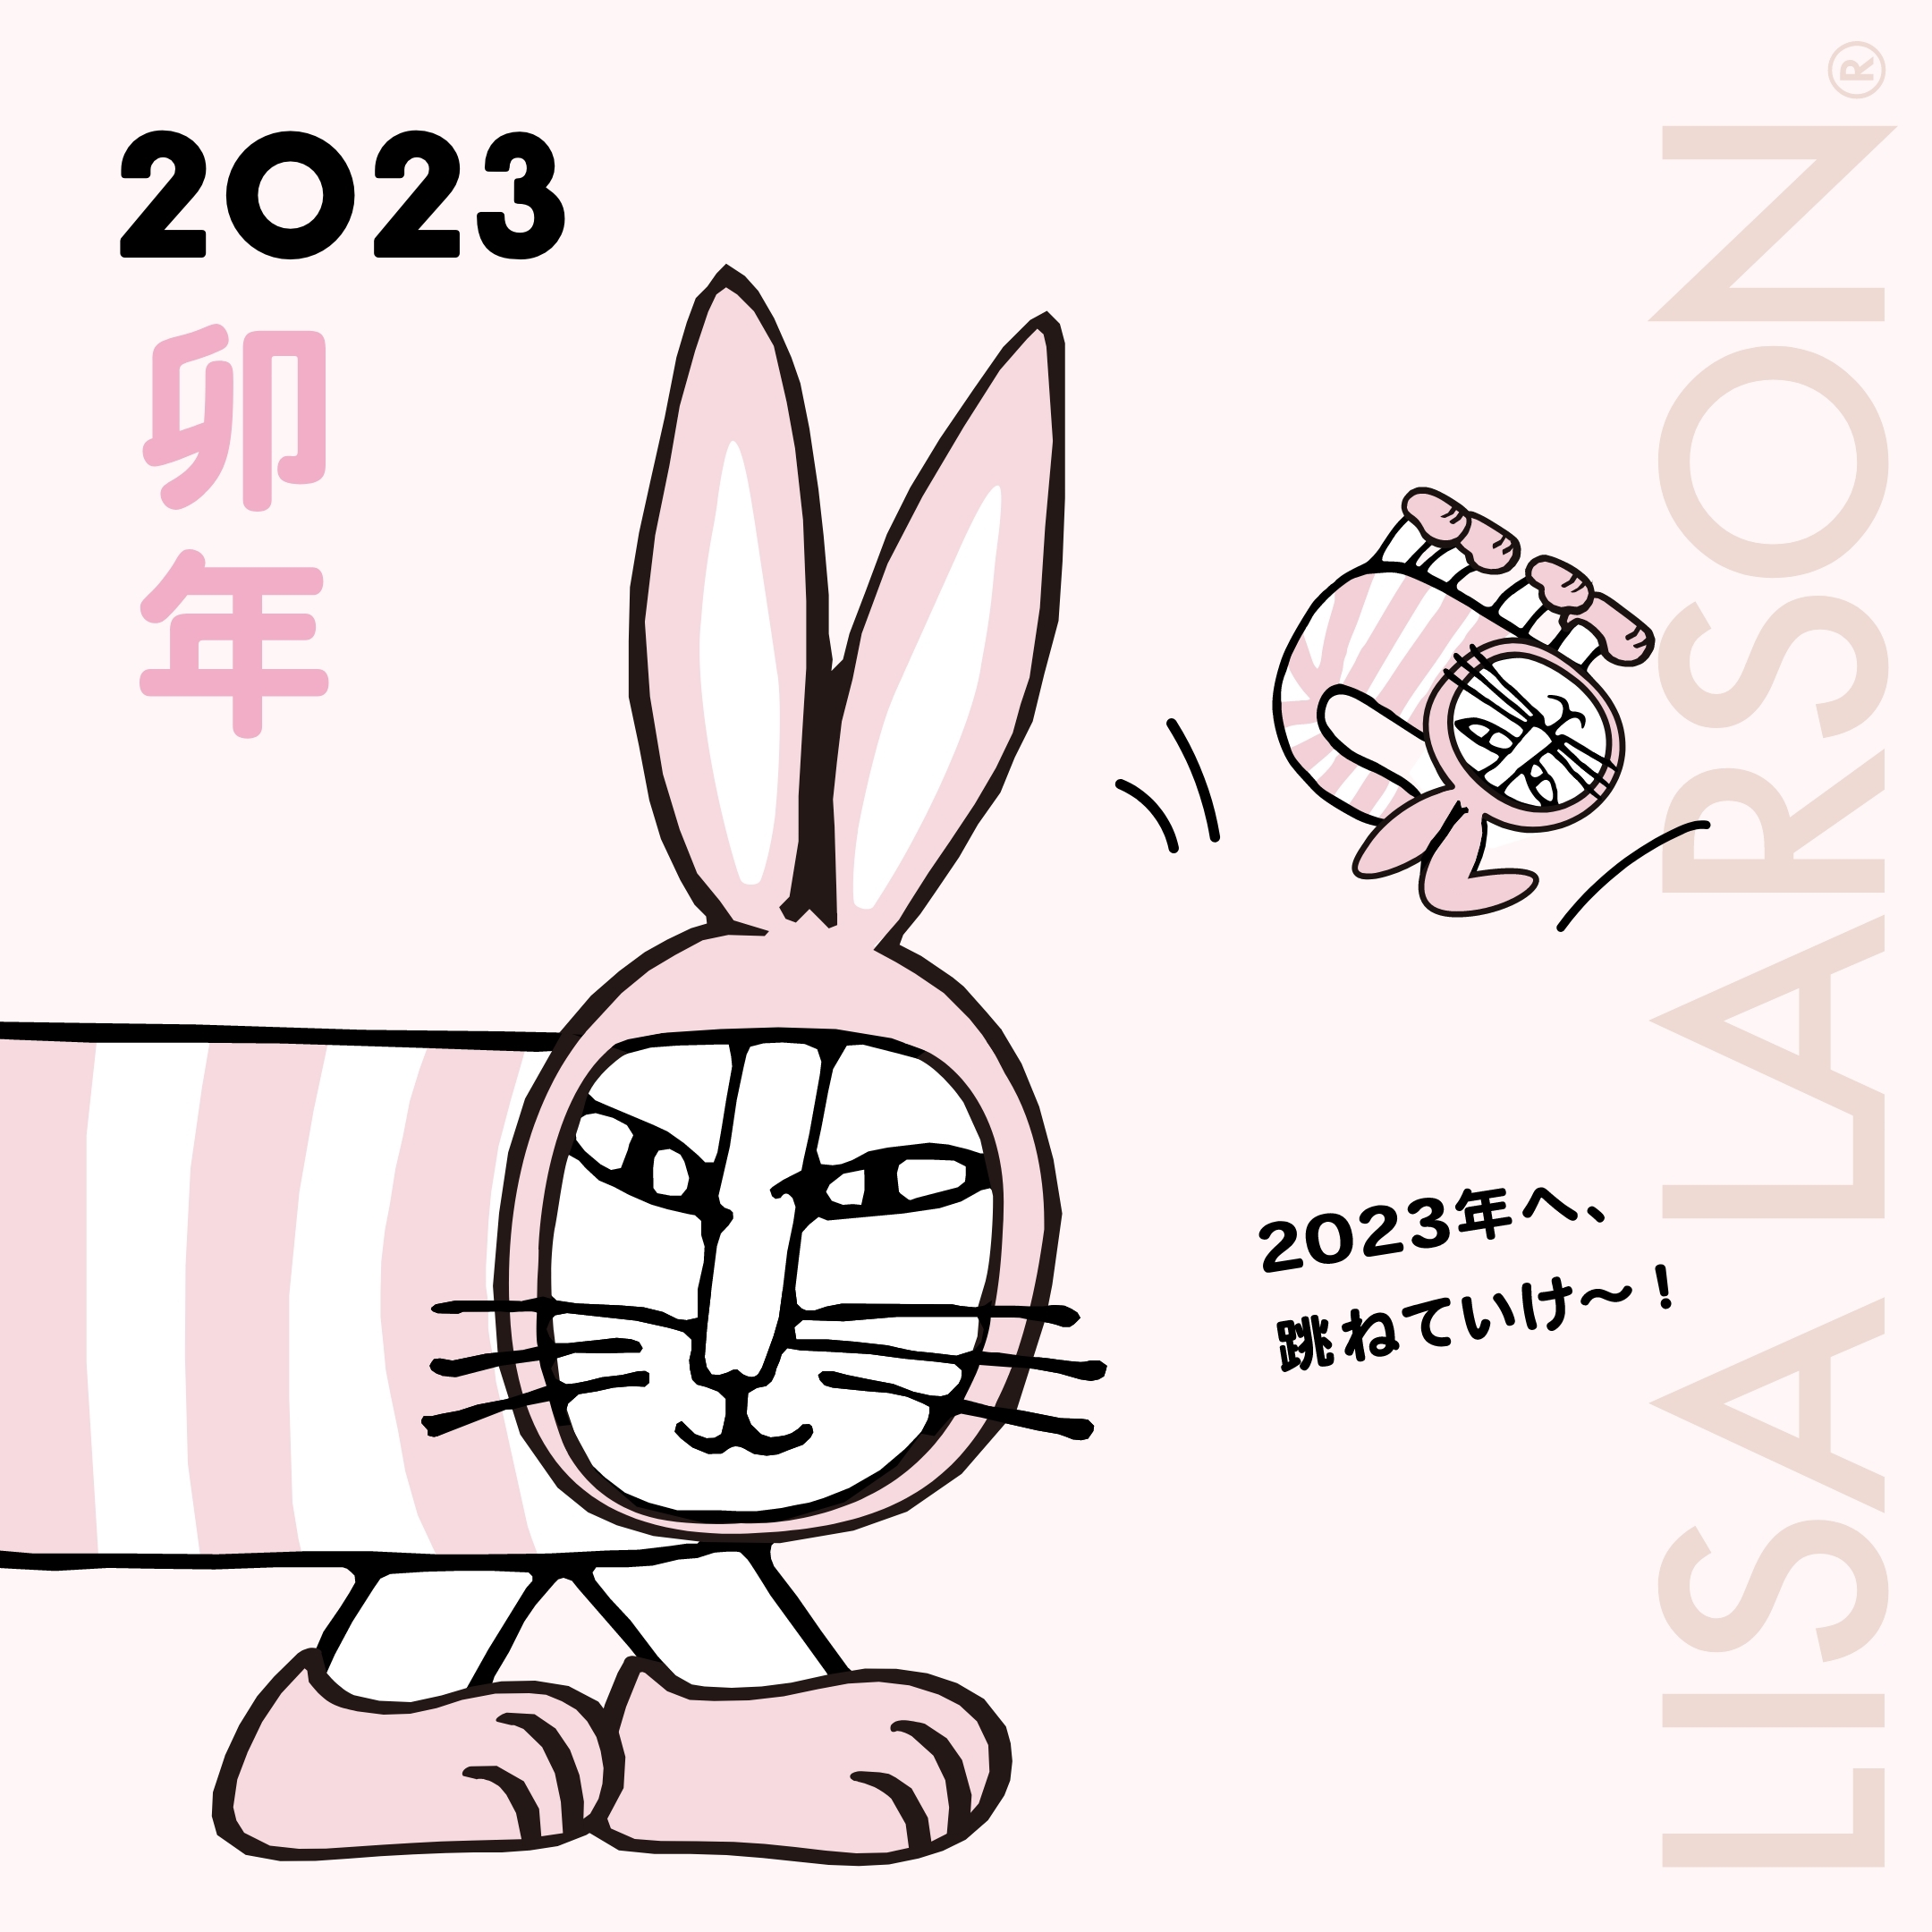 2023年へ、跳ねていけ〜！ – LISA LARSON